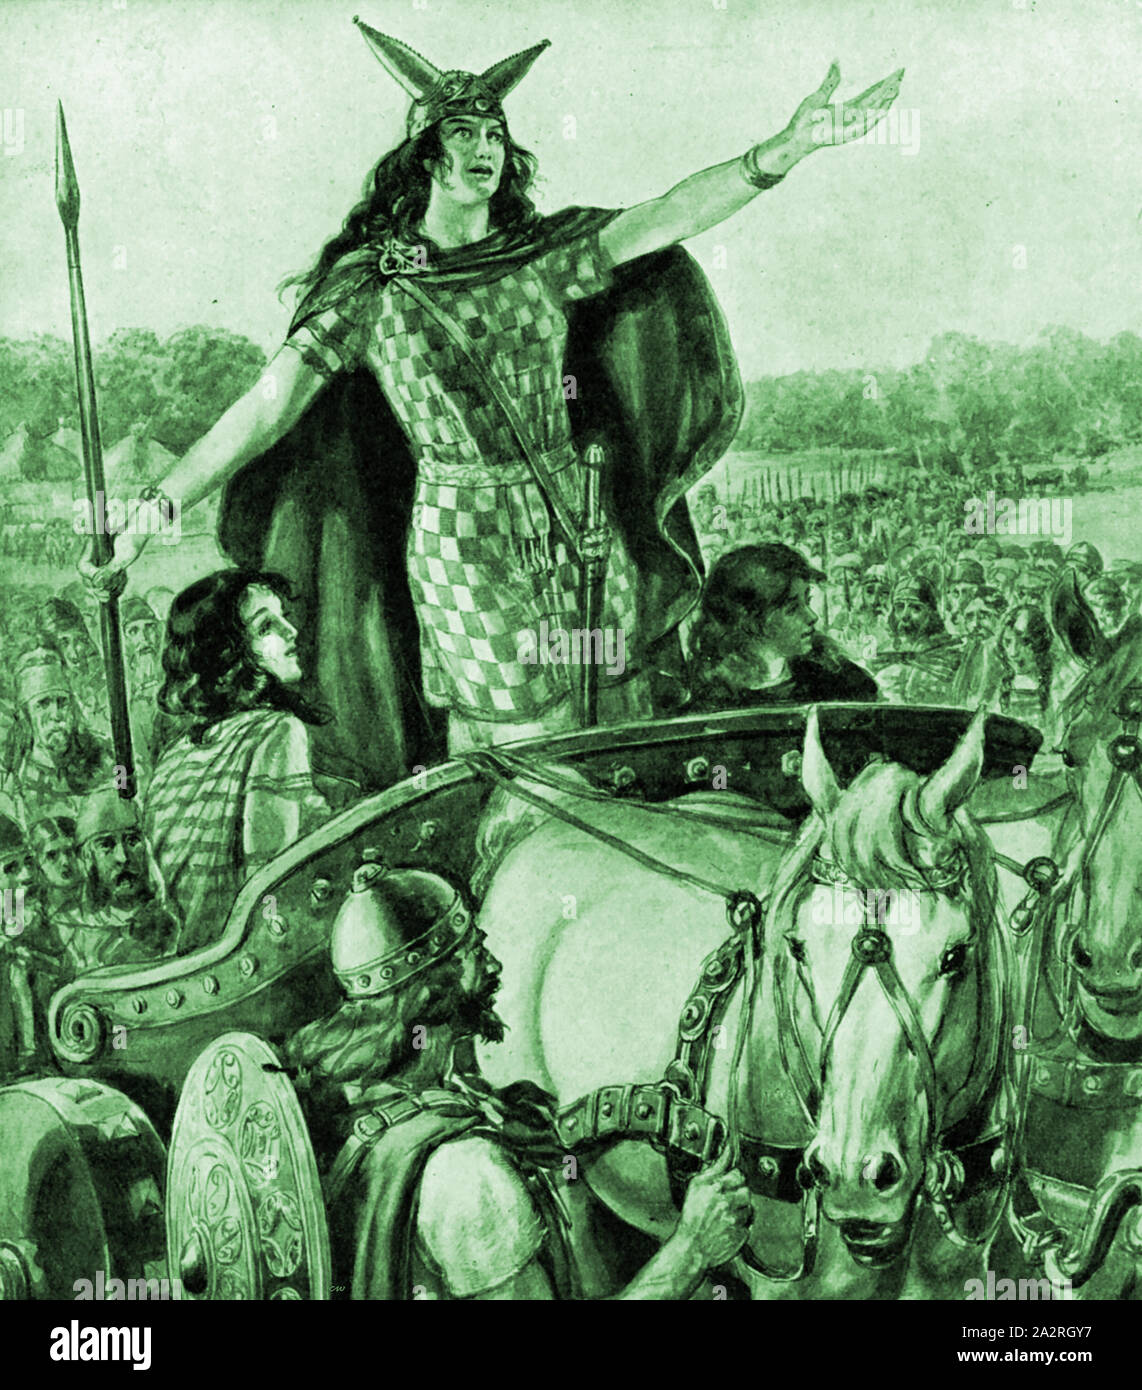 Ein 30er Abbildung von Boudicca/Boudicea/Boudica/Boudicca Königin der Icini Stamm in ihrem Wagen die Briten gegen die Römischen Invasoren zu Meuterei. Sie führte den Aufstand gegen die Besatzer des Römischen Reiches in AD 60 oder 61 Stockfoto